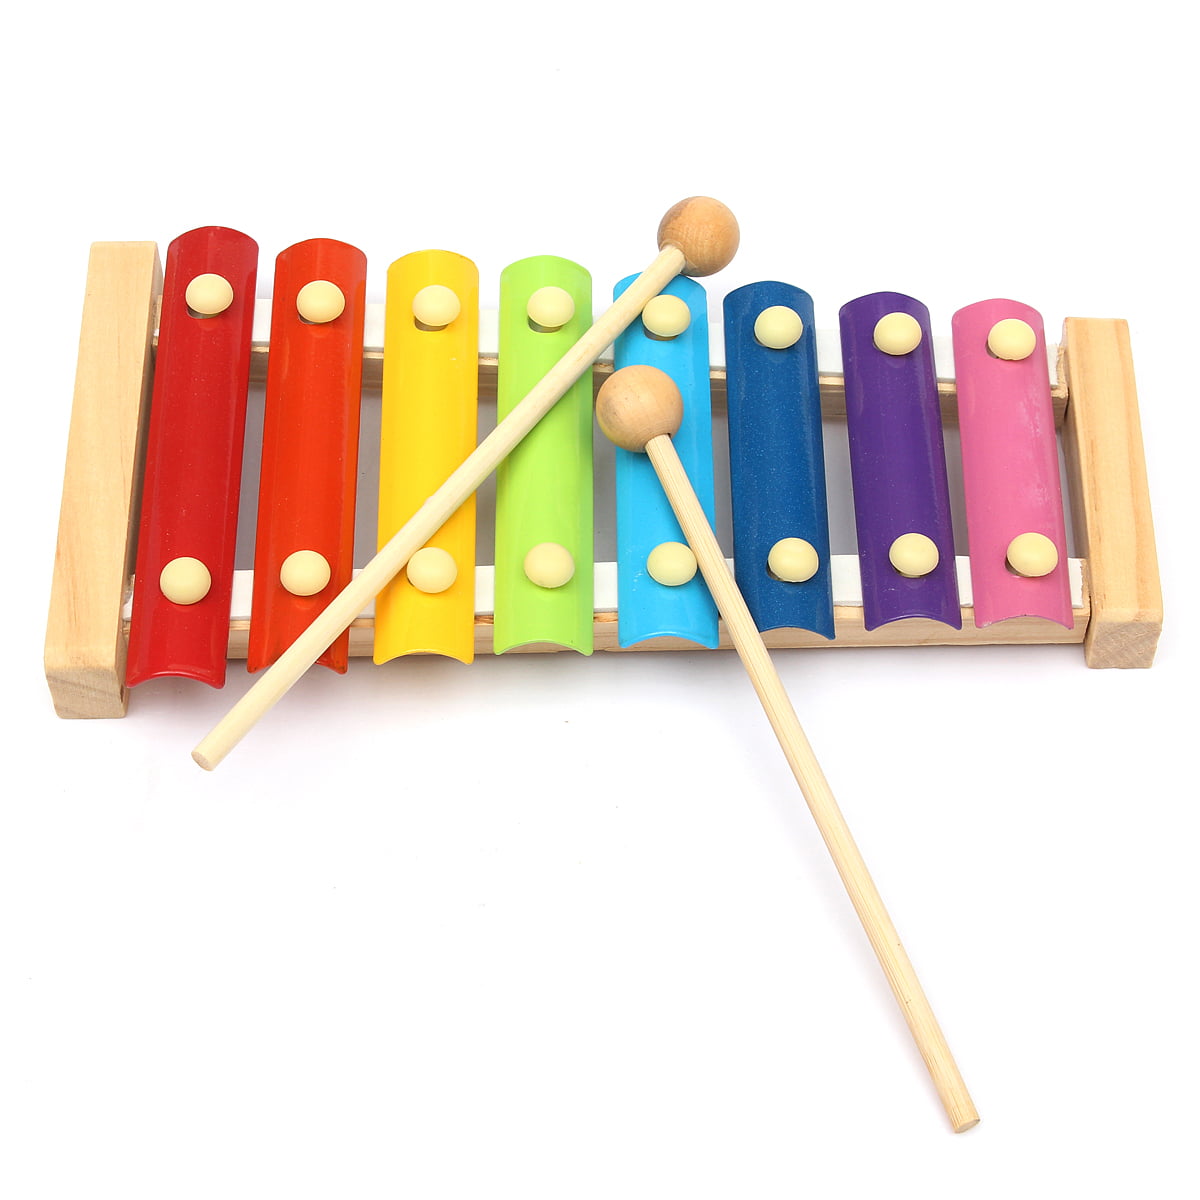 Wooden Xylophone Glockenspiel Children Kid Musical Instrument Music Toy C 